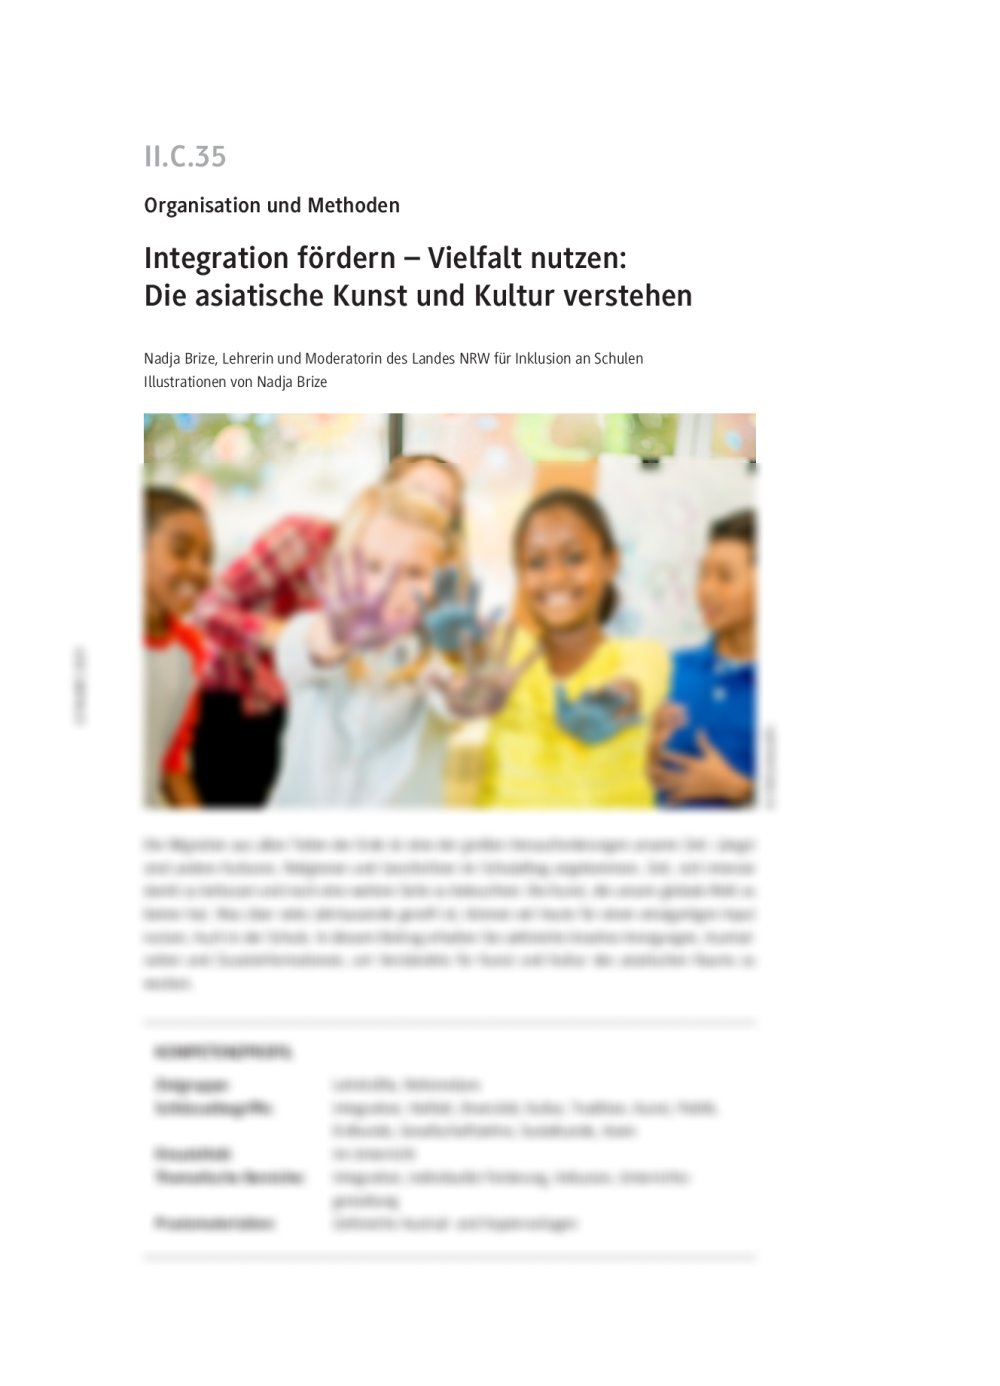 Integration fördern – Vielfalt nutzen: Die asiatische Kunst und Kultur verstehen - Seite 1